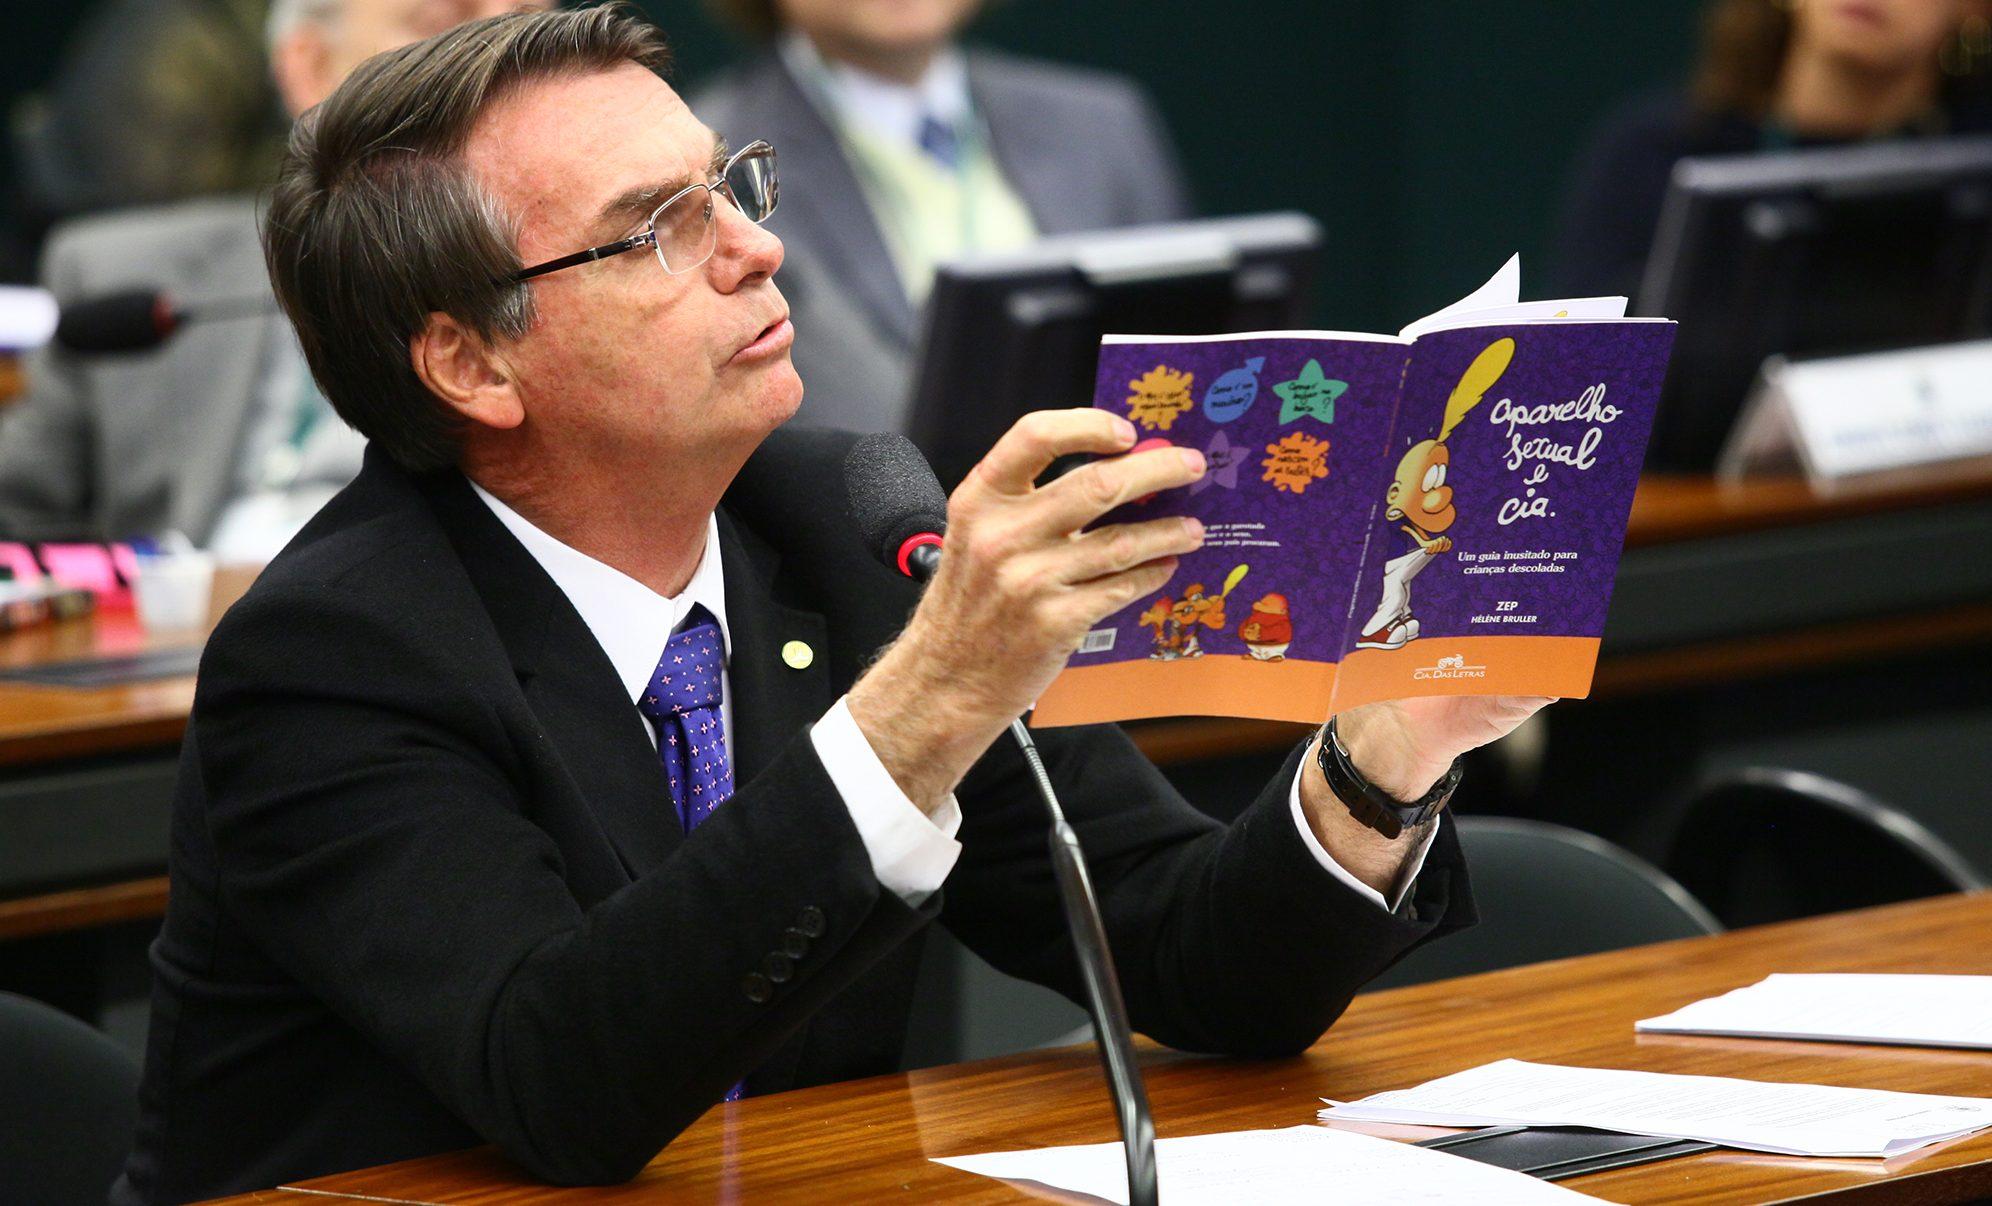 Proyecto de Bolsonaro busca prohibir que se hable de política y sexualidad en escuelas de Brasil